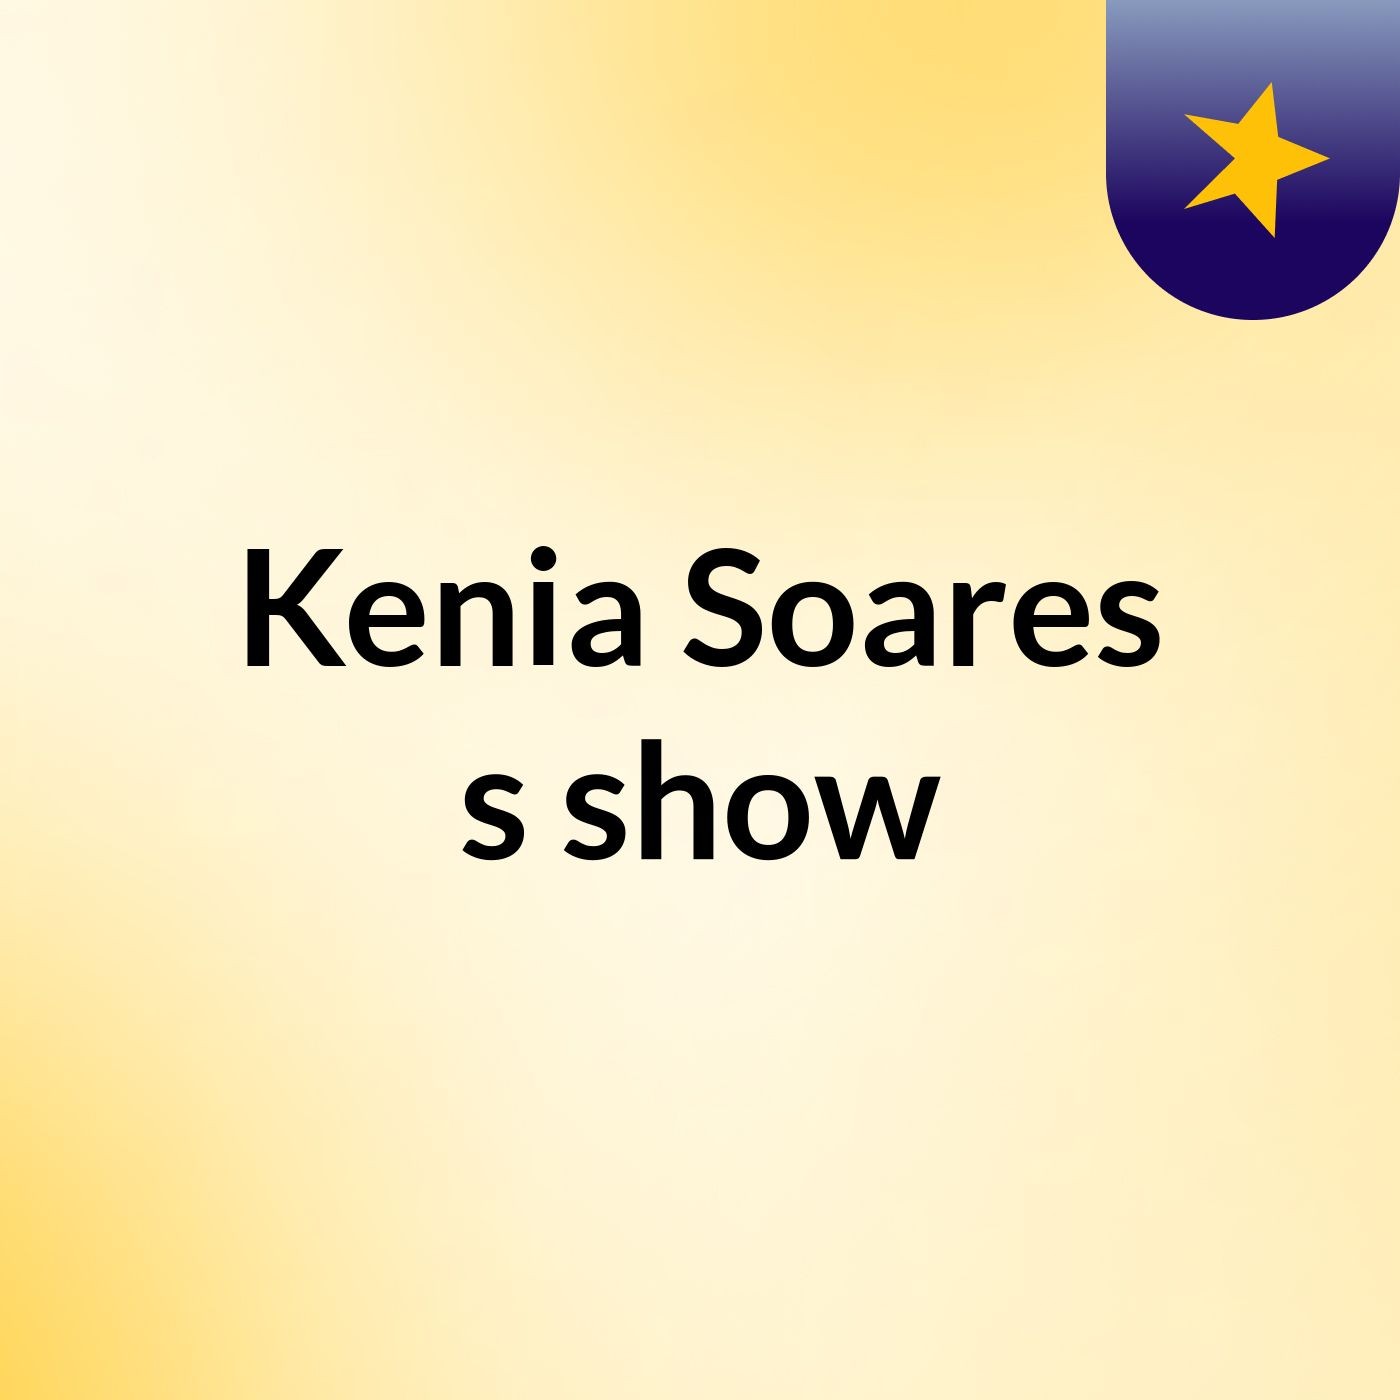 Kenia Soares's show